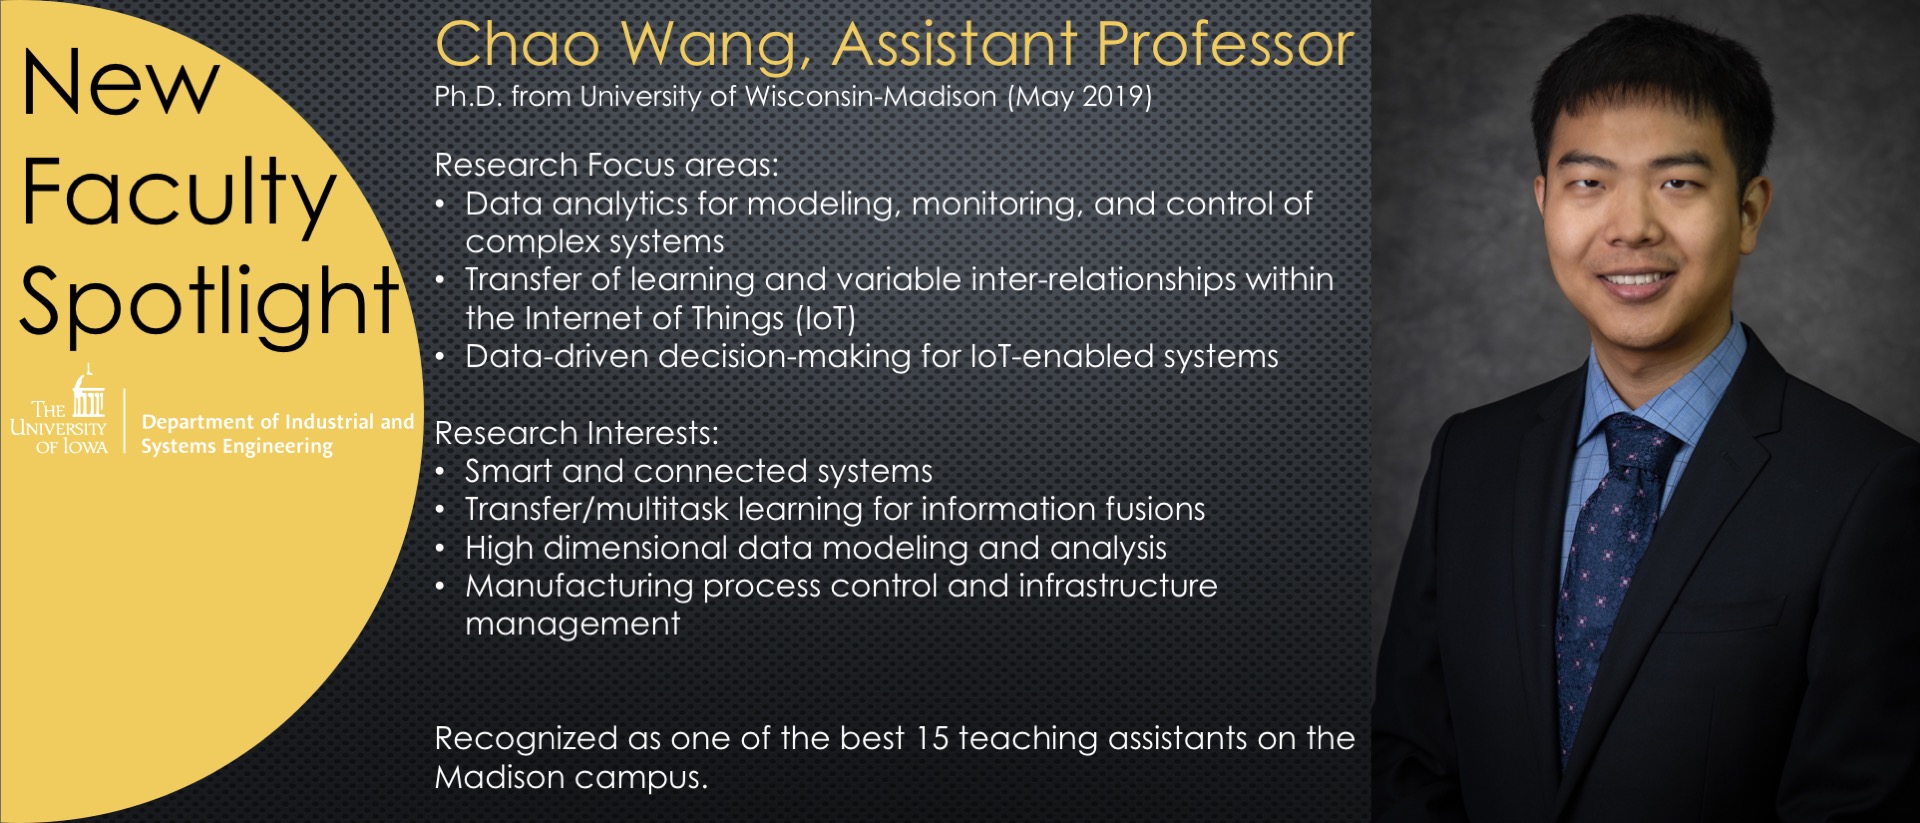 New Faculty Spotlight - Chao Wang